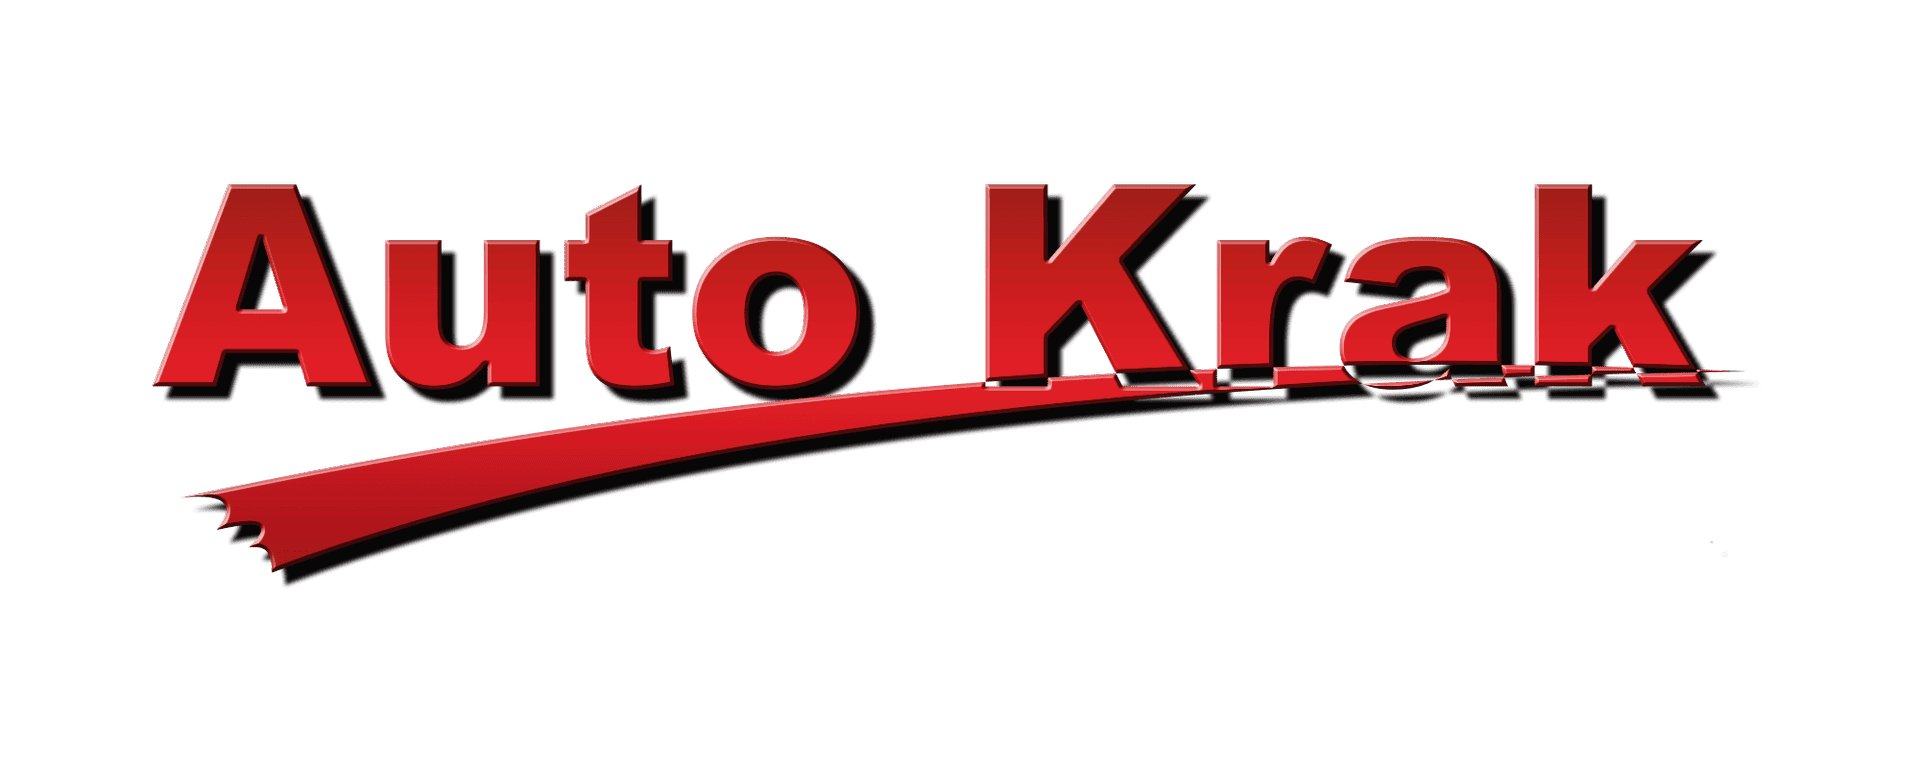 Auto Krak  logo